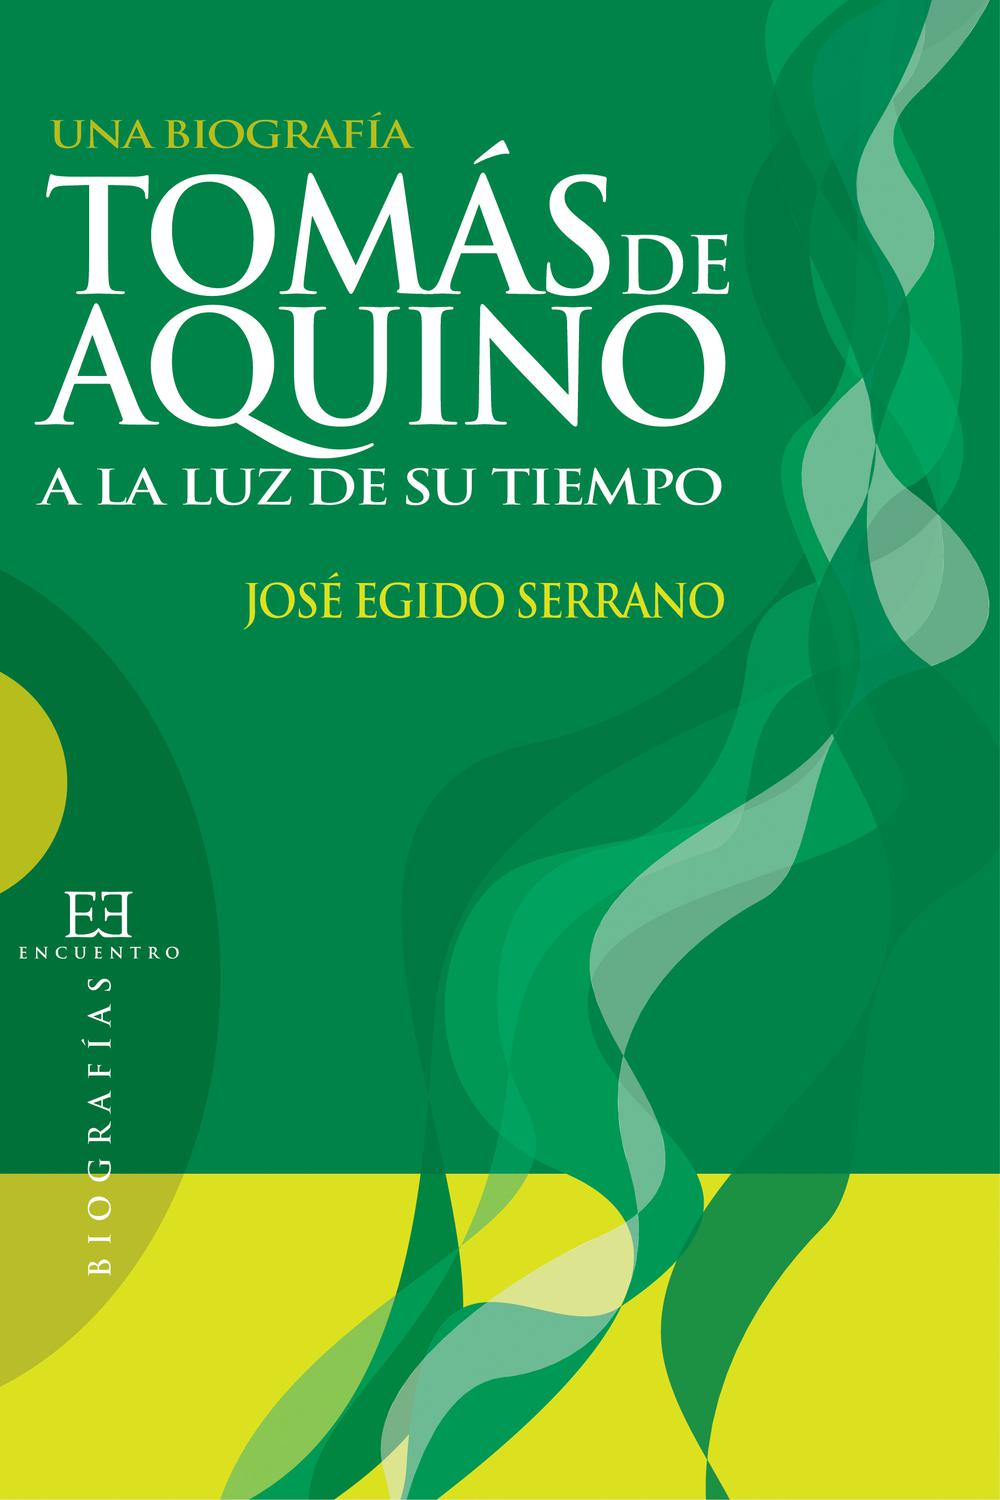 Tomás de Aquino a la luz de su tiempo - José Egido Serrano